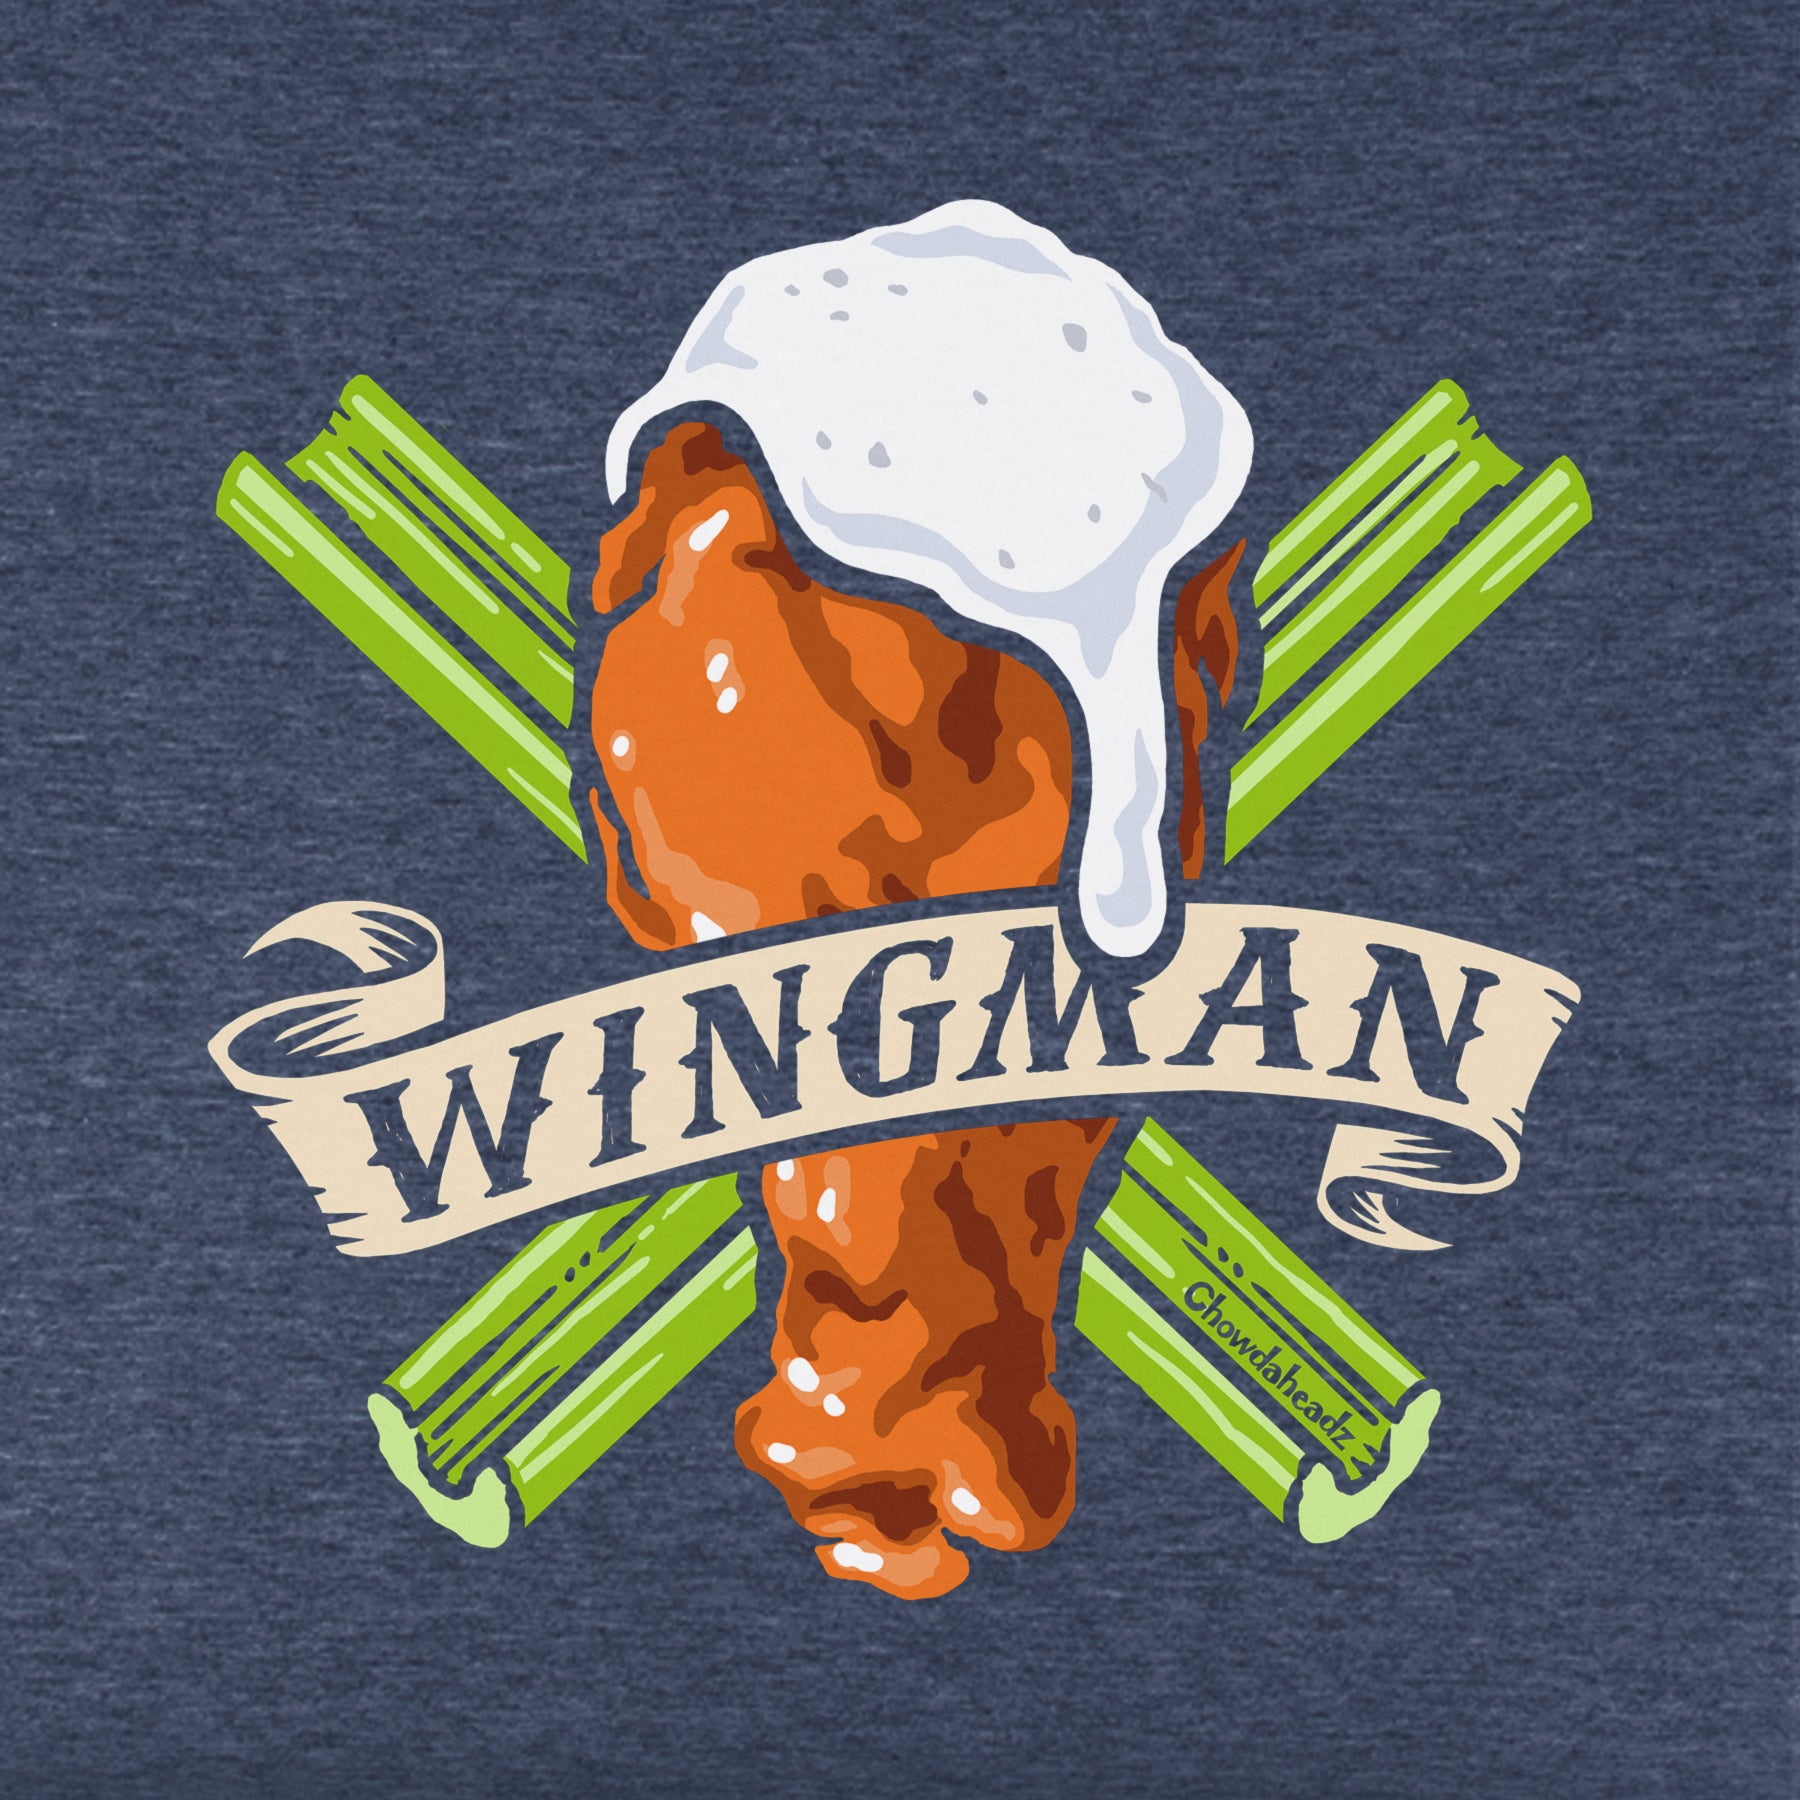 Wingman Youth T-Shirt - Chowdaheadz